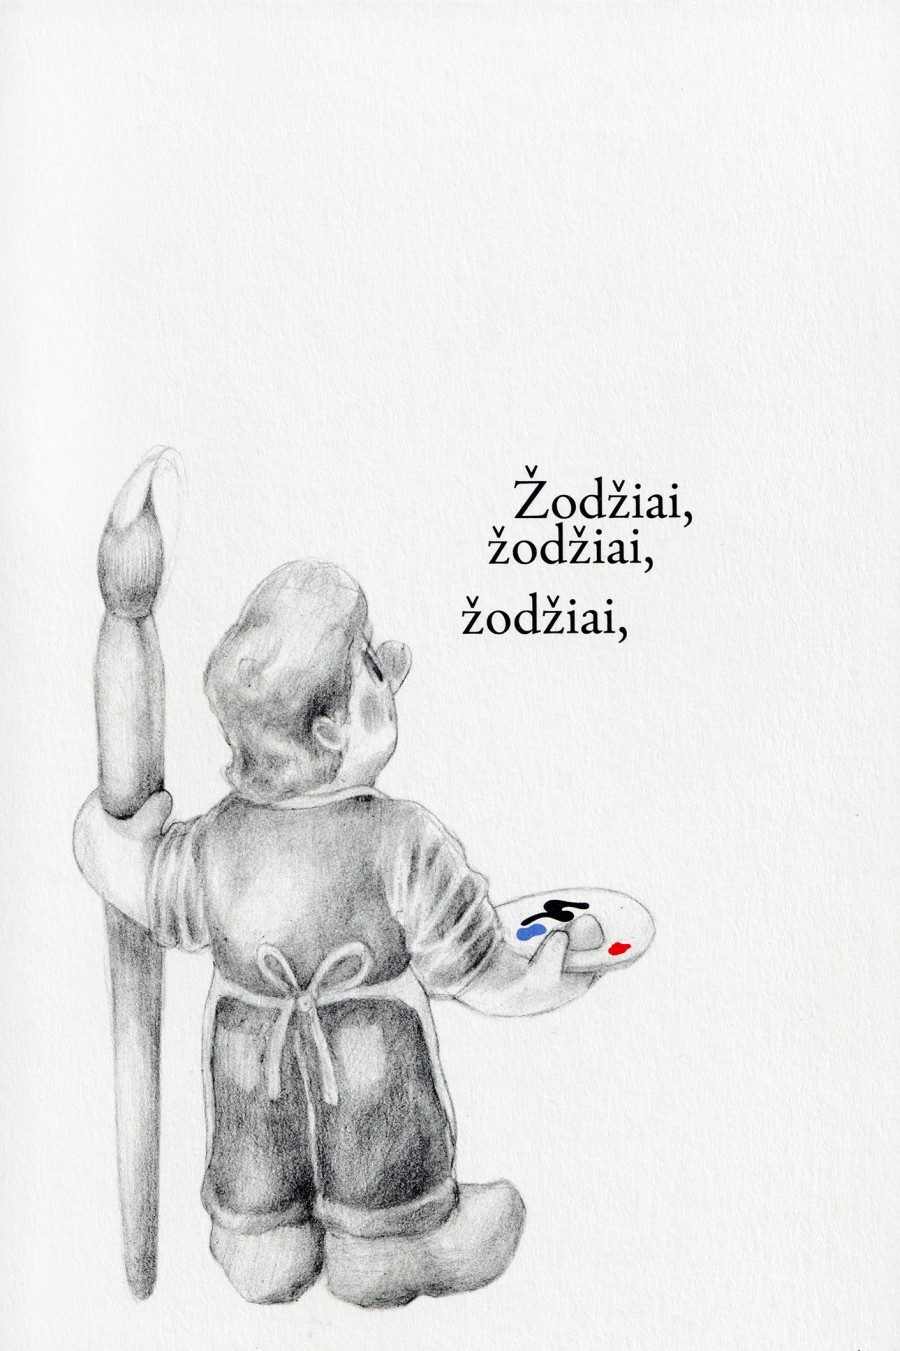 *Žodžiai, žodžiai, žodžiai*, edited by Valentinas Klimašauskas, published by artbooks.lt, 2022. Drawing by Augustinas Milkus